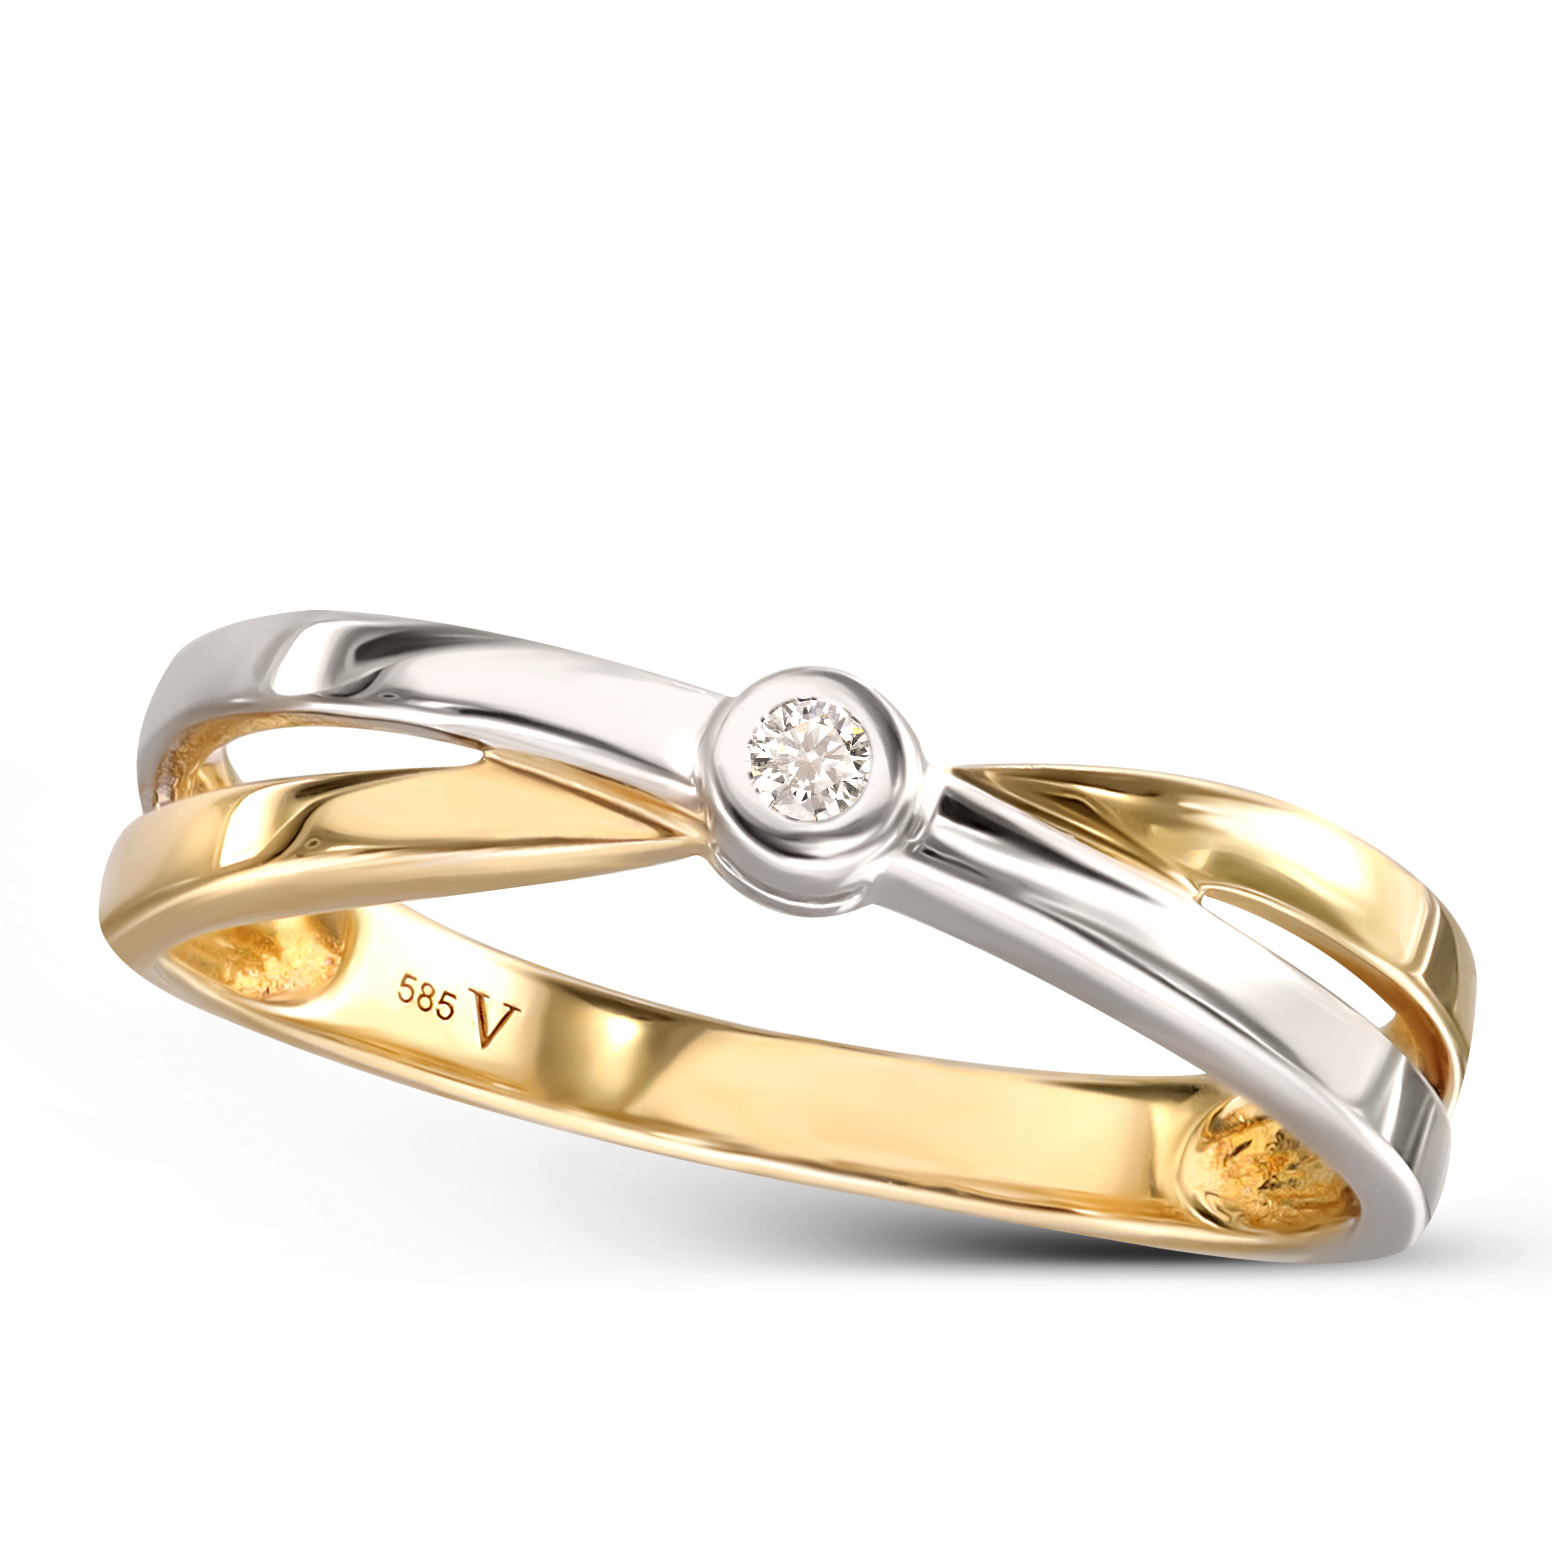 Dwukolorowy pierścionek złoty plecionka z diamentem naturalnym, próba 585